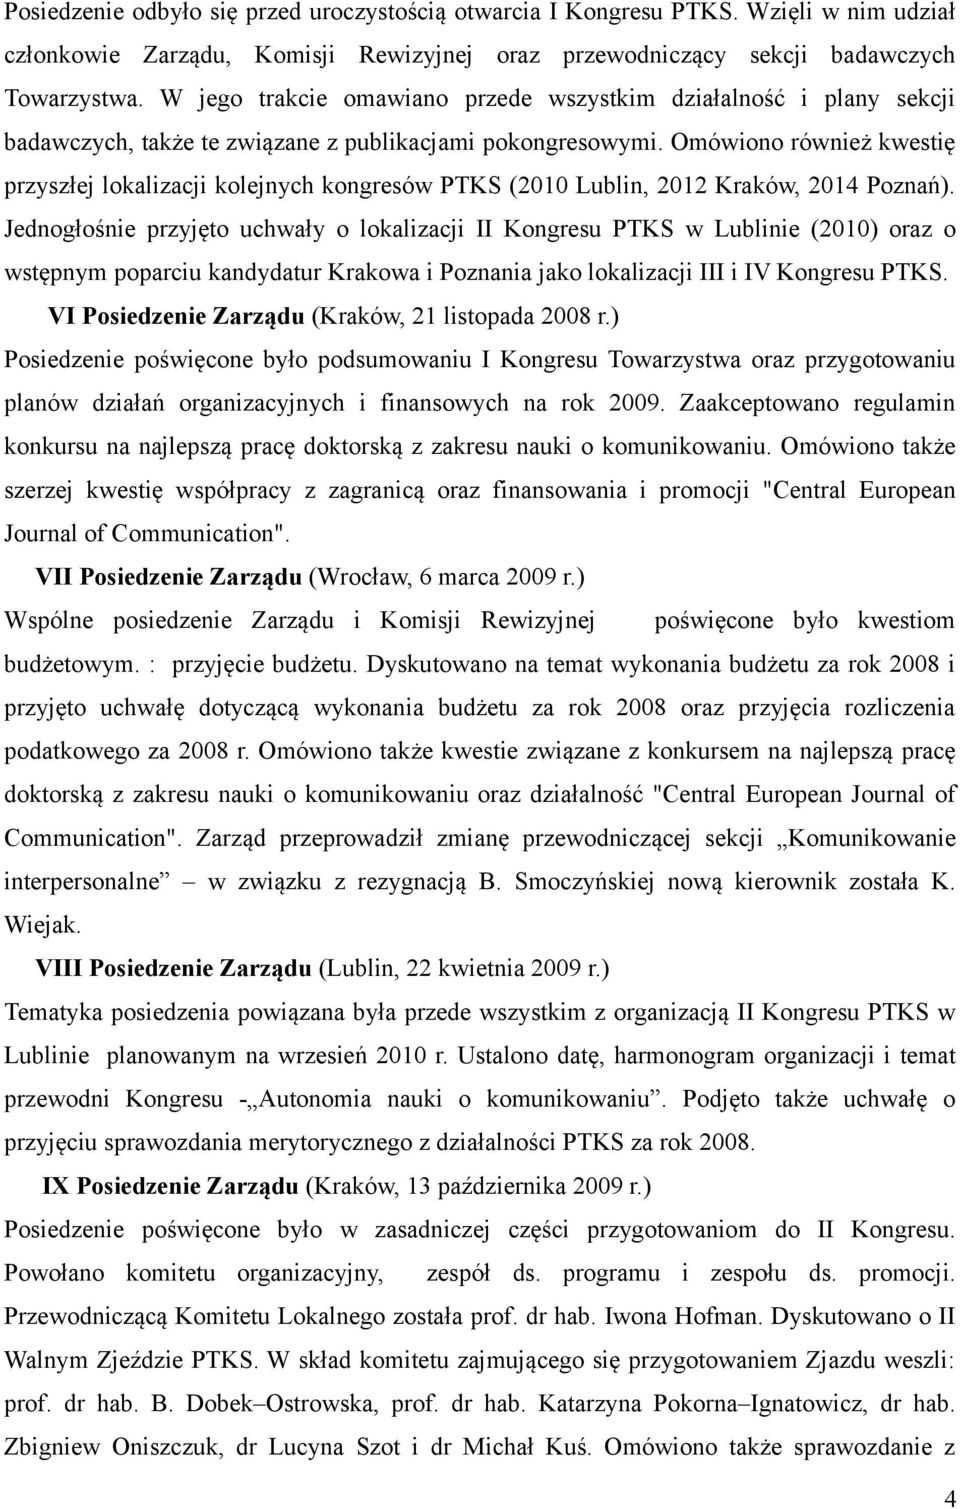 Omówiono również kwestię przyszłej lokalizacji kolejnych kongresów PTKS (2010 Lublin, 2012 Kraków, 2014 Poznań).